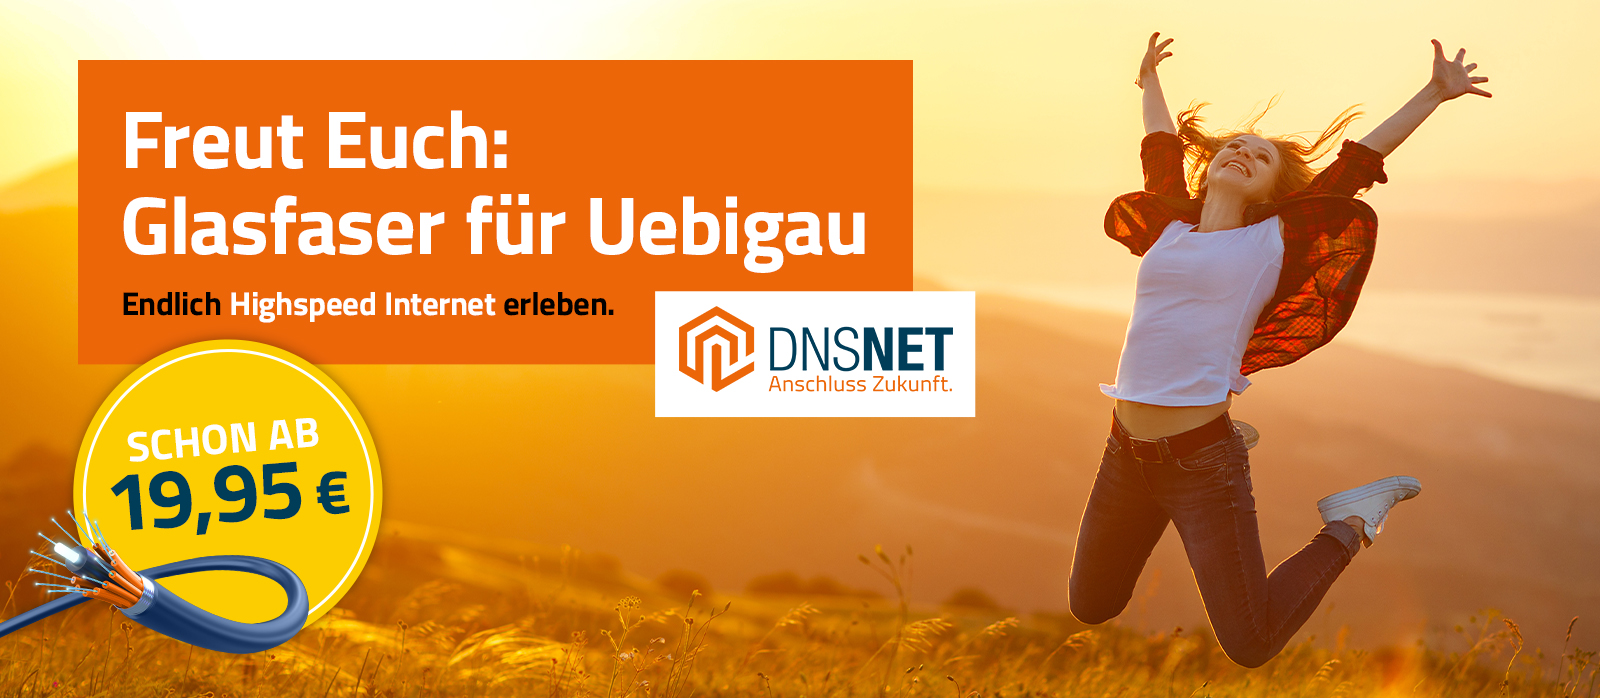 DNSNET-Web-Banner-Uebigau2-1600x698